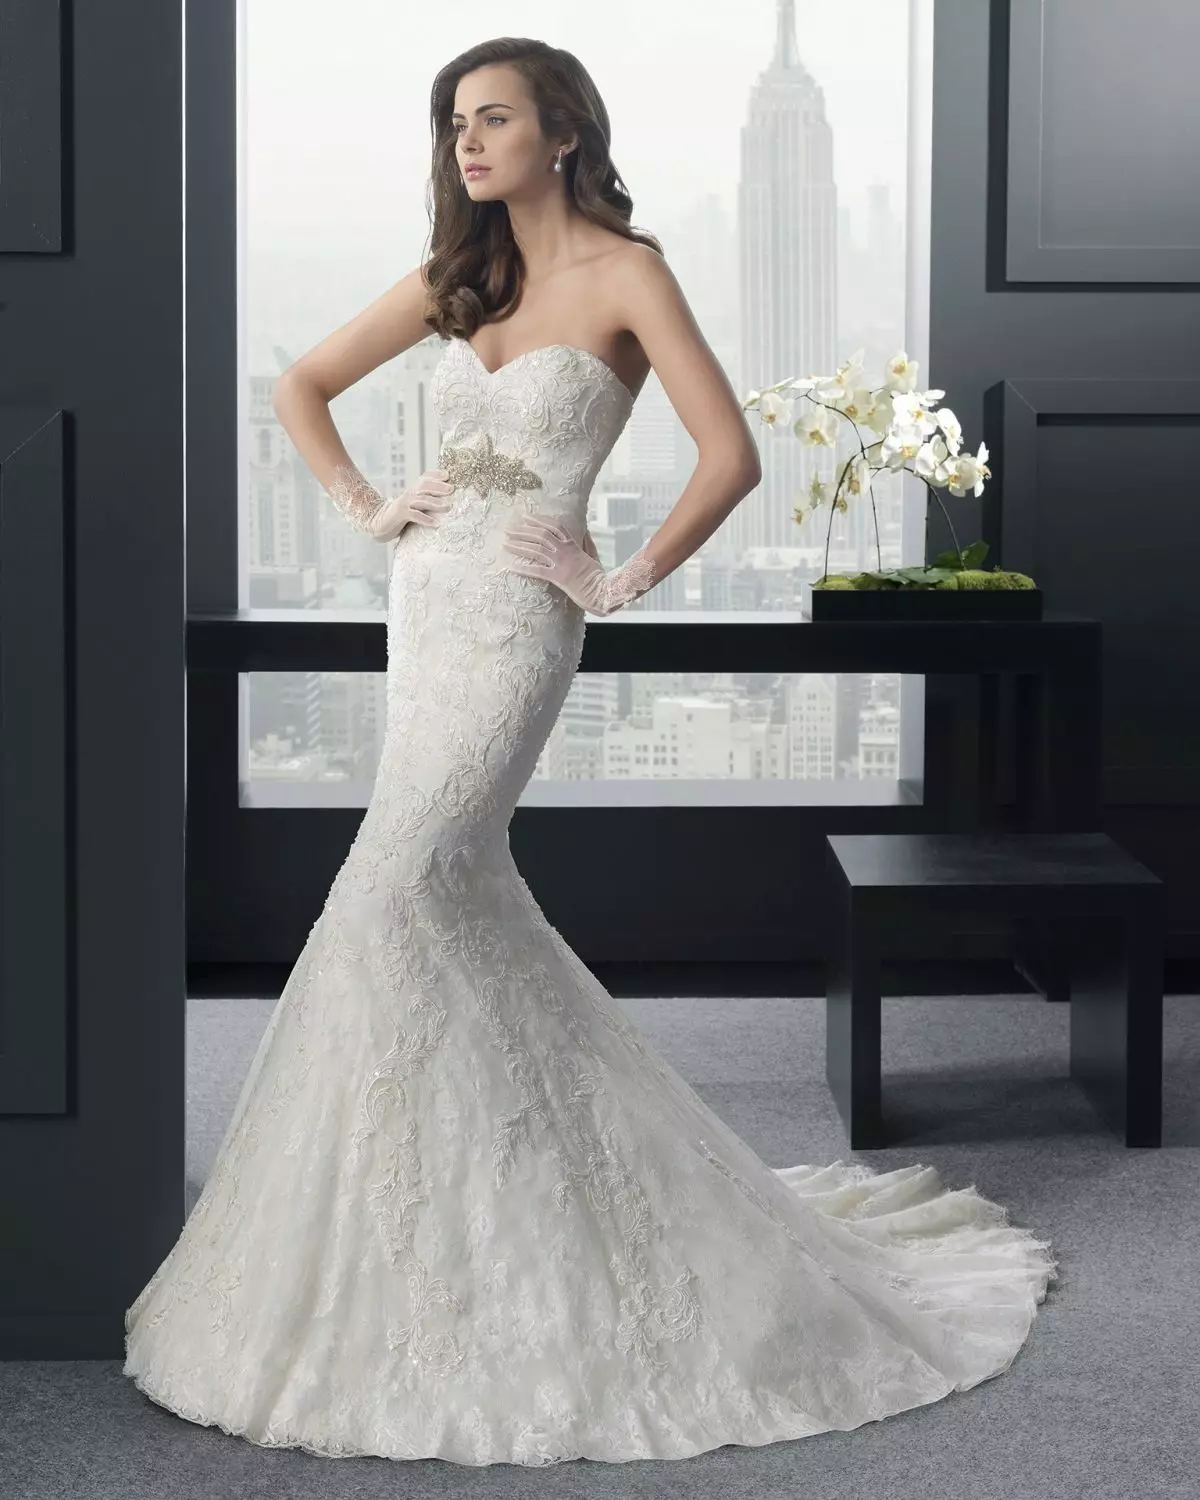 I-Wedding dress mermaid nge-lush skirt